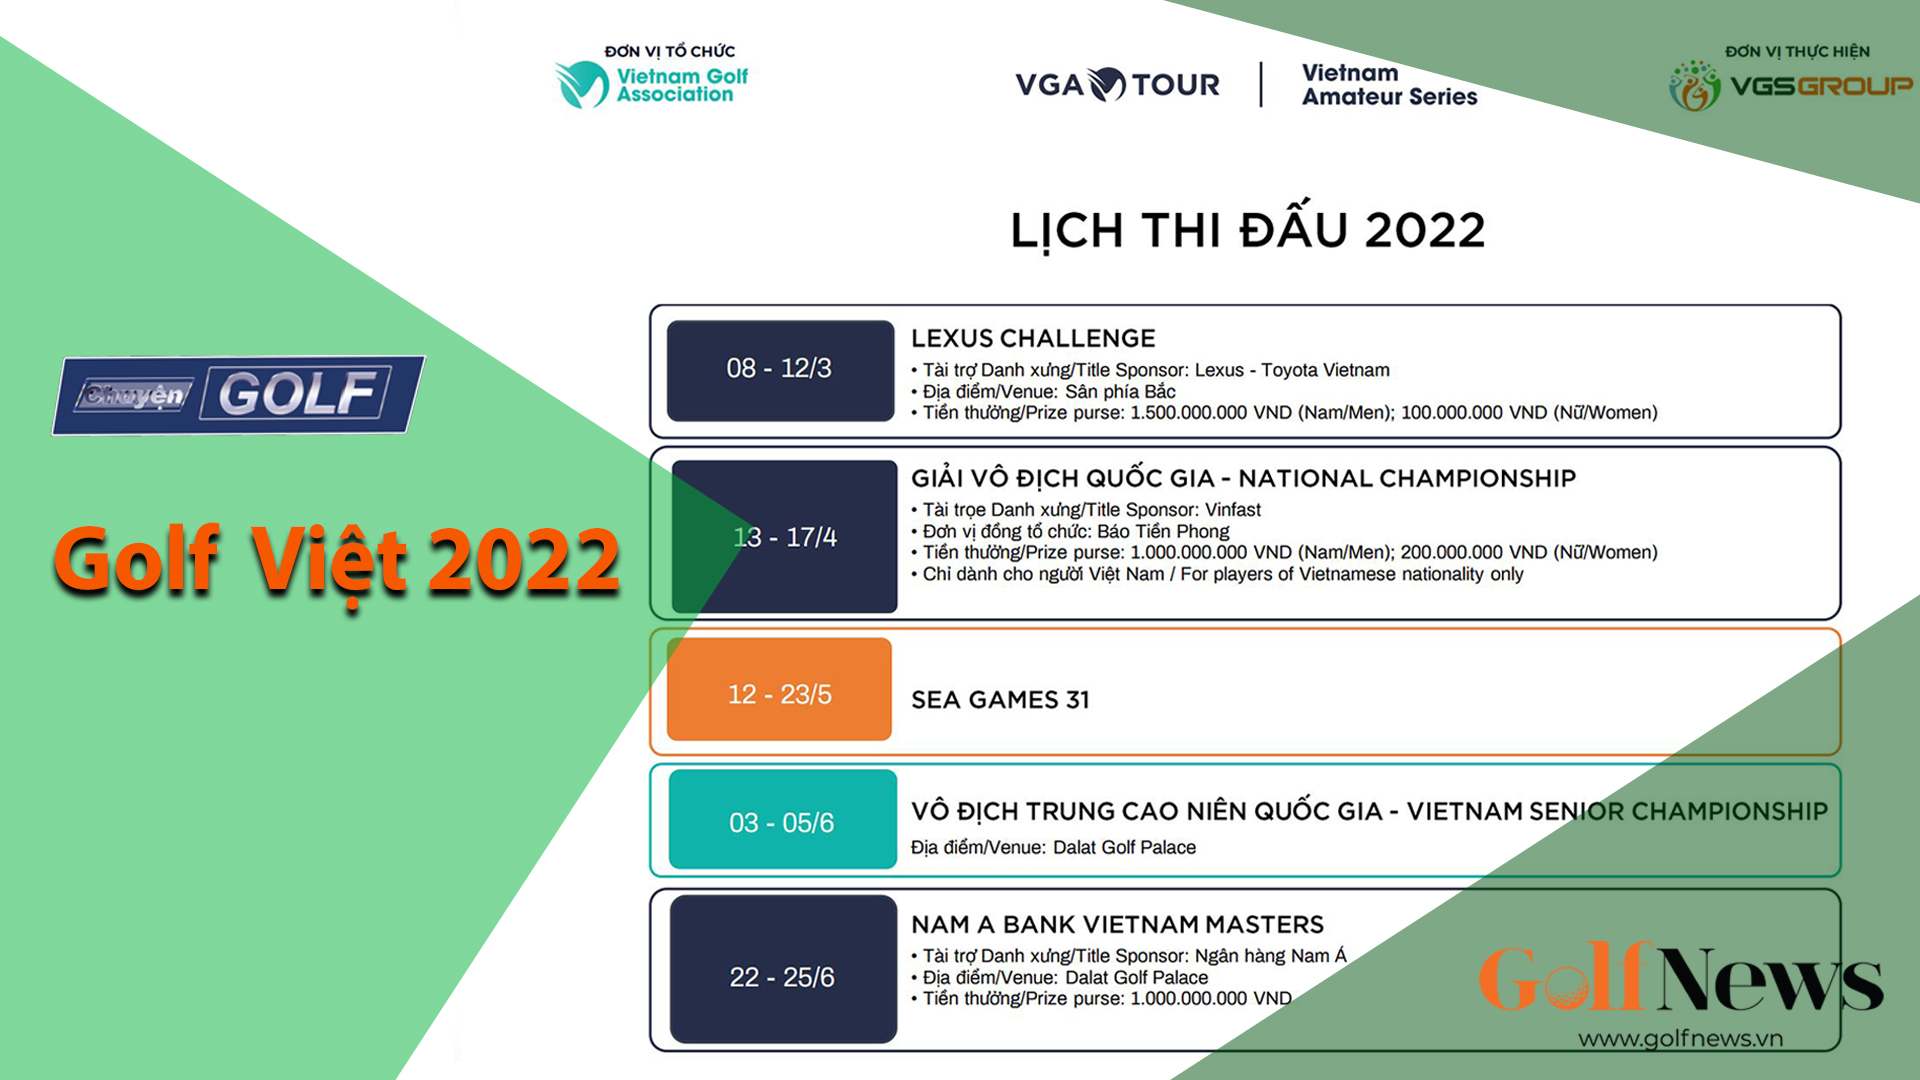 Chuyện golf 87: Golf Việt 2022 - Sự chuyển mình mạnh mẽ